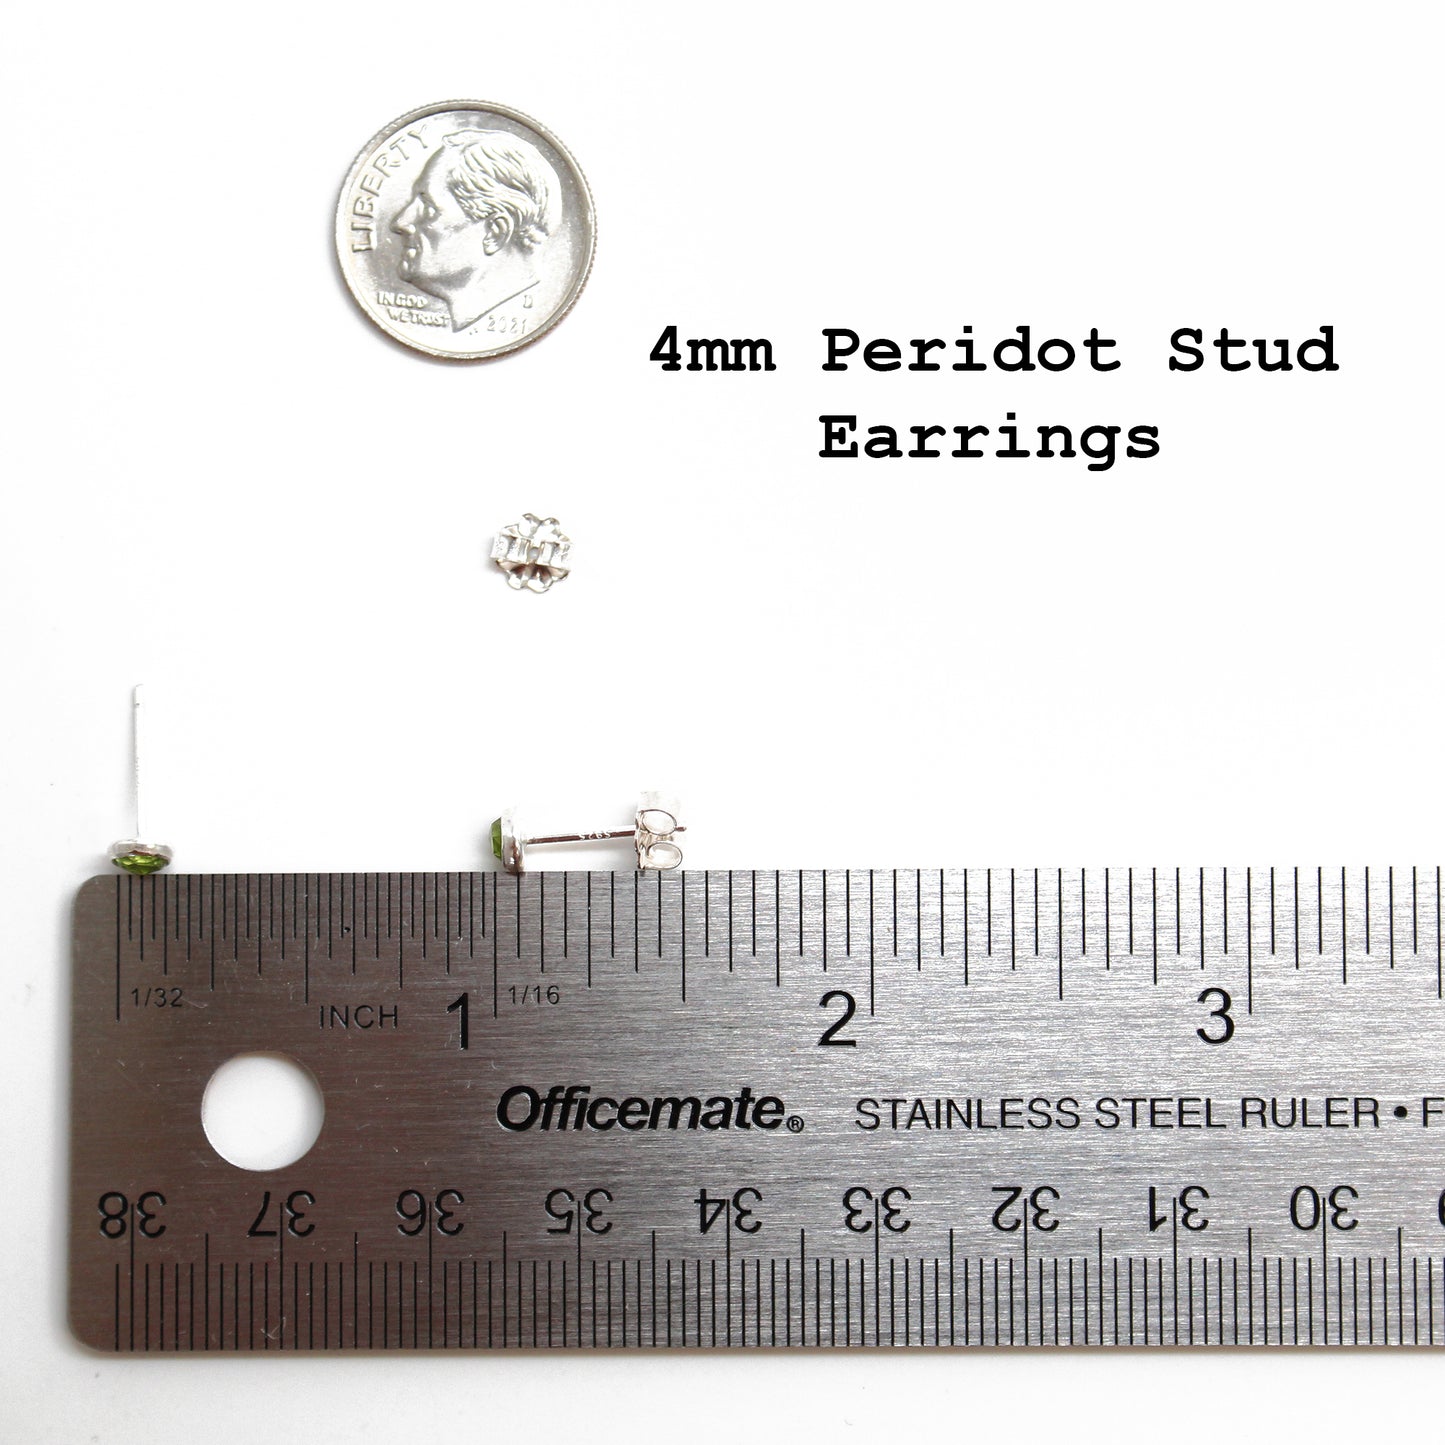 Peridot Stud Earrings in Sterling Silver 4mm